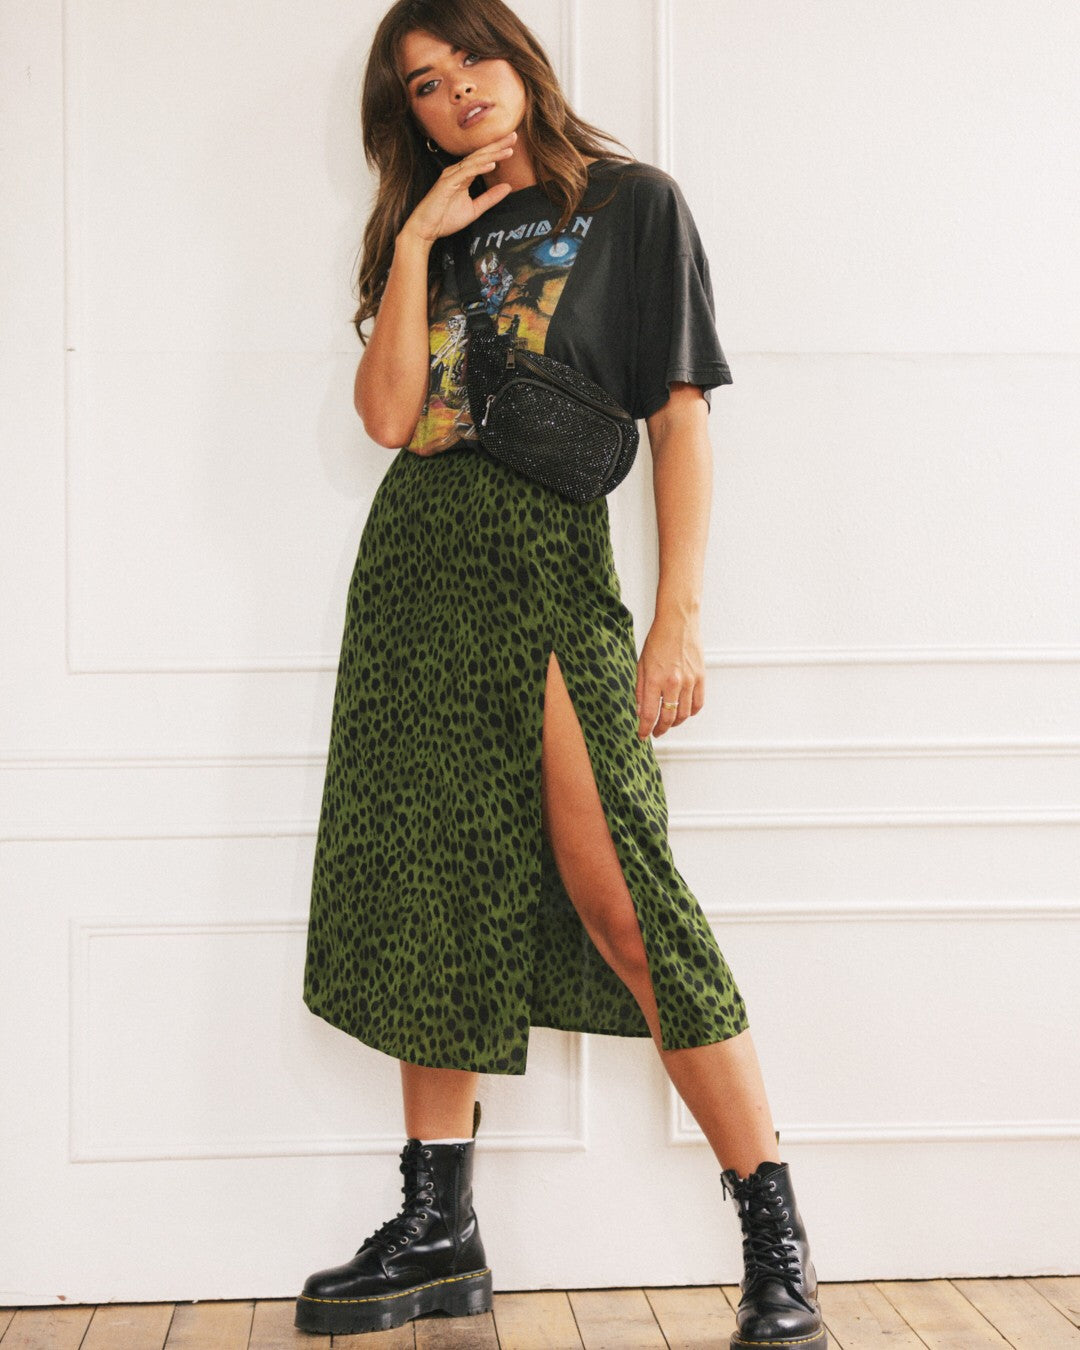 Fabulously Fierce Leopard Mini Skirt - Green